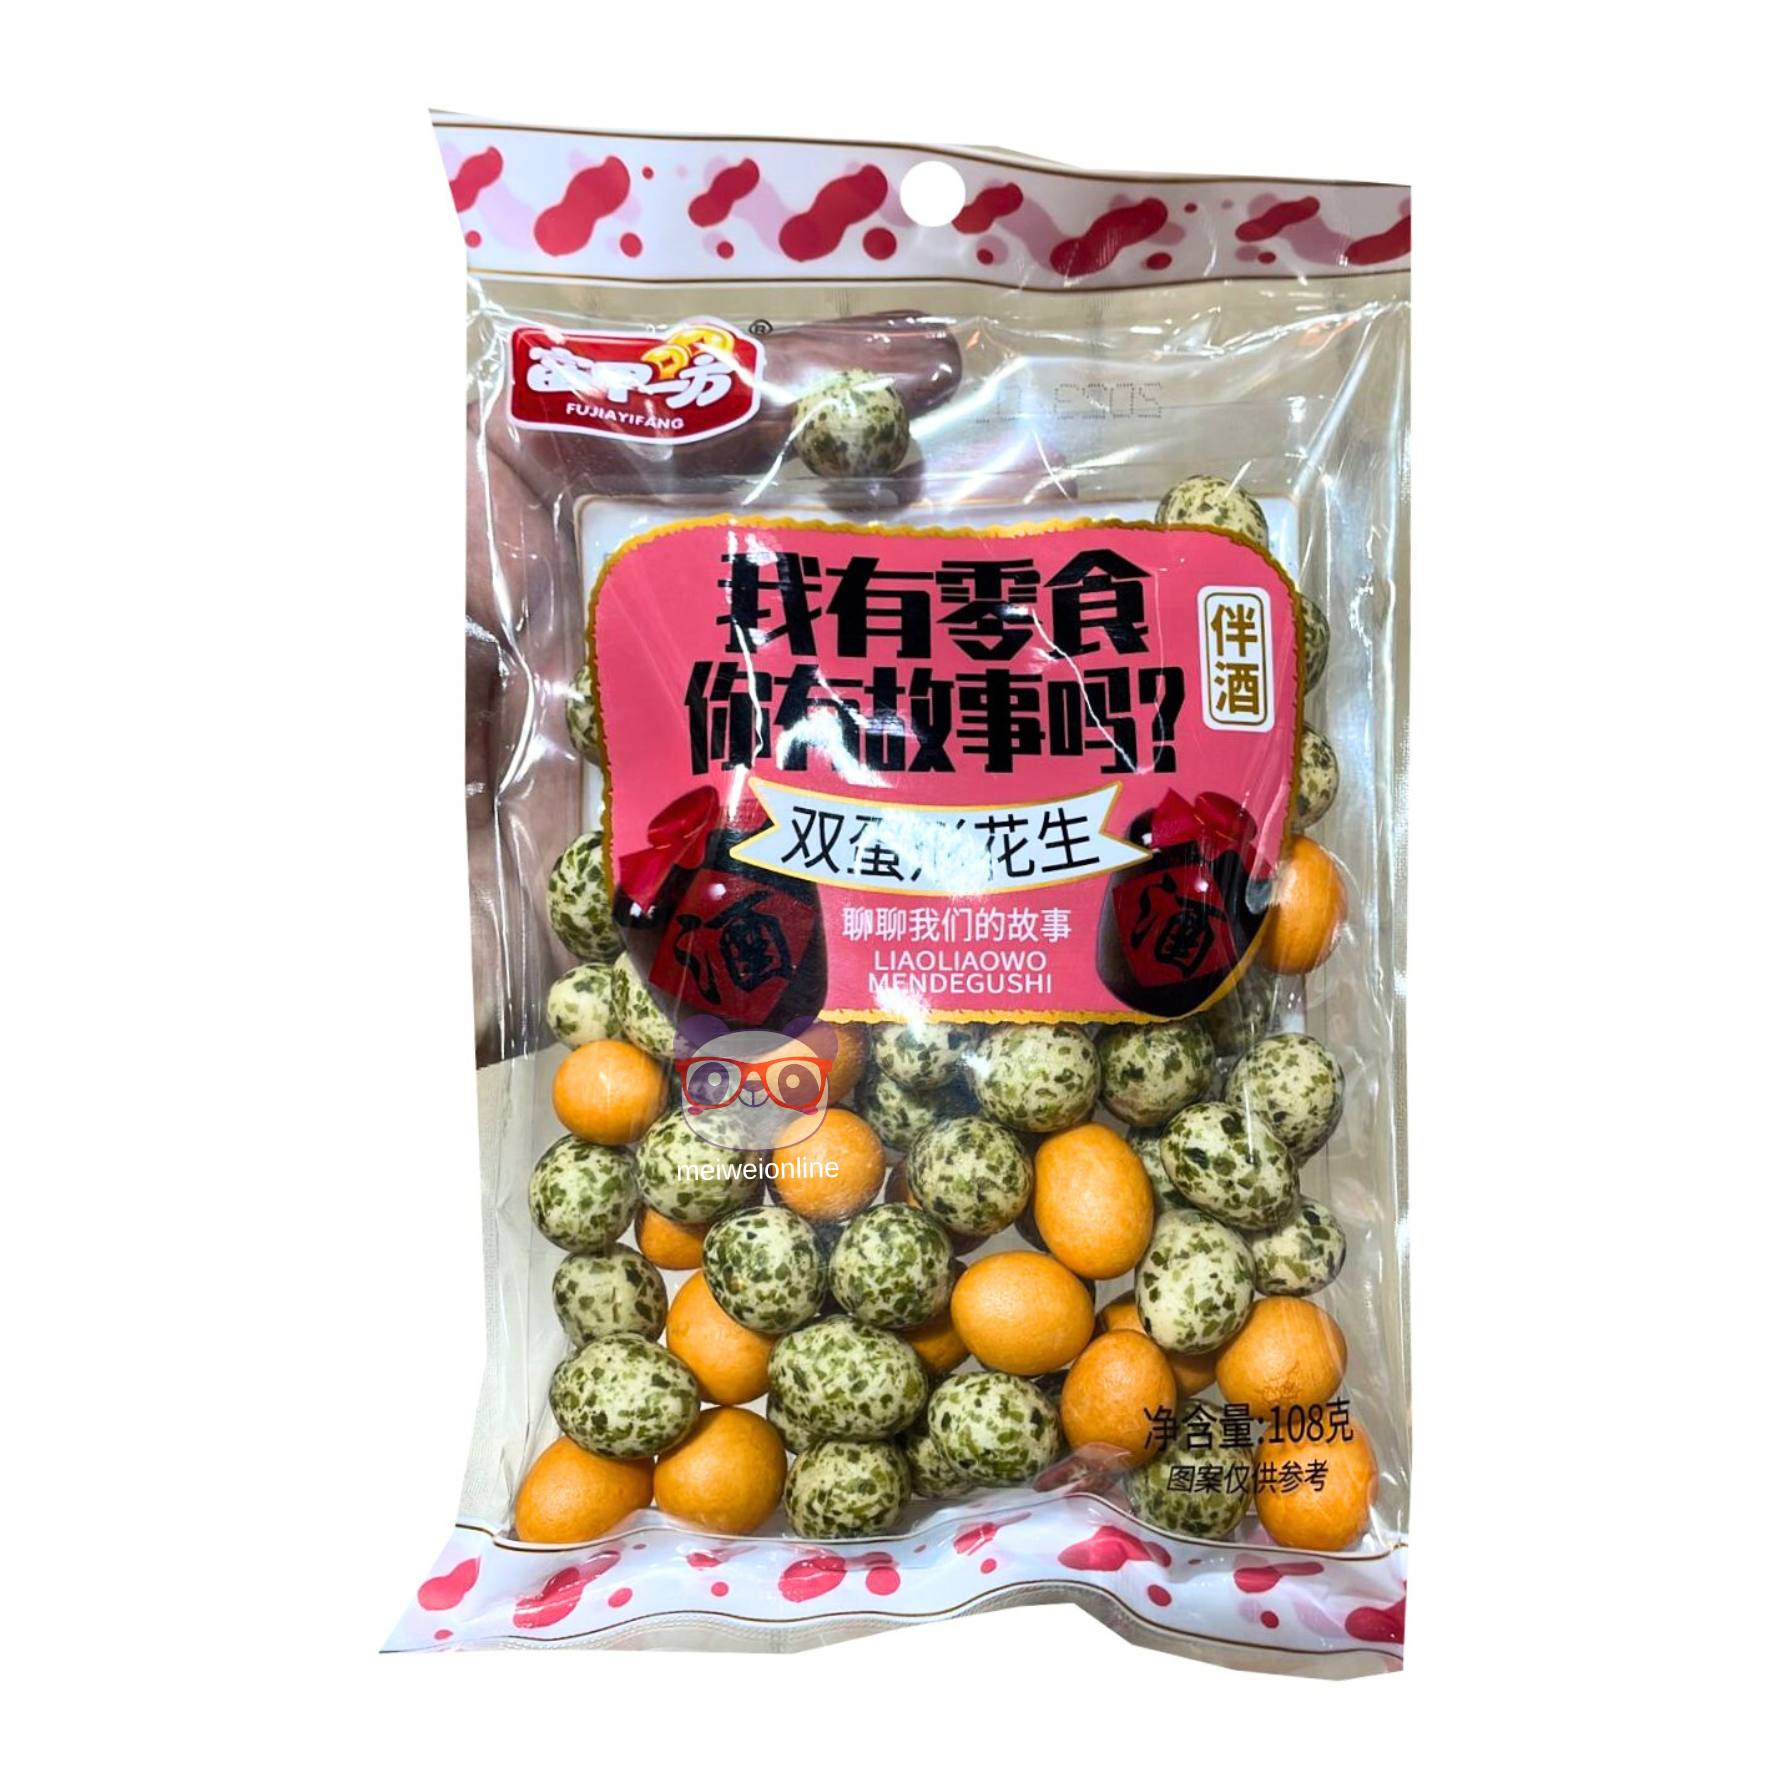 Amendoim 2 sabores - Fujiayifang 108g